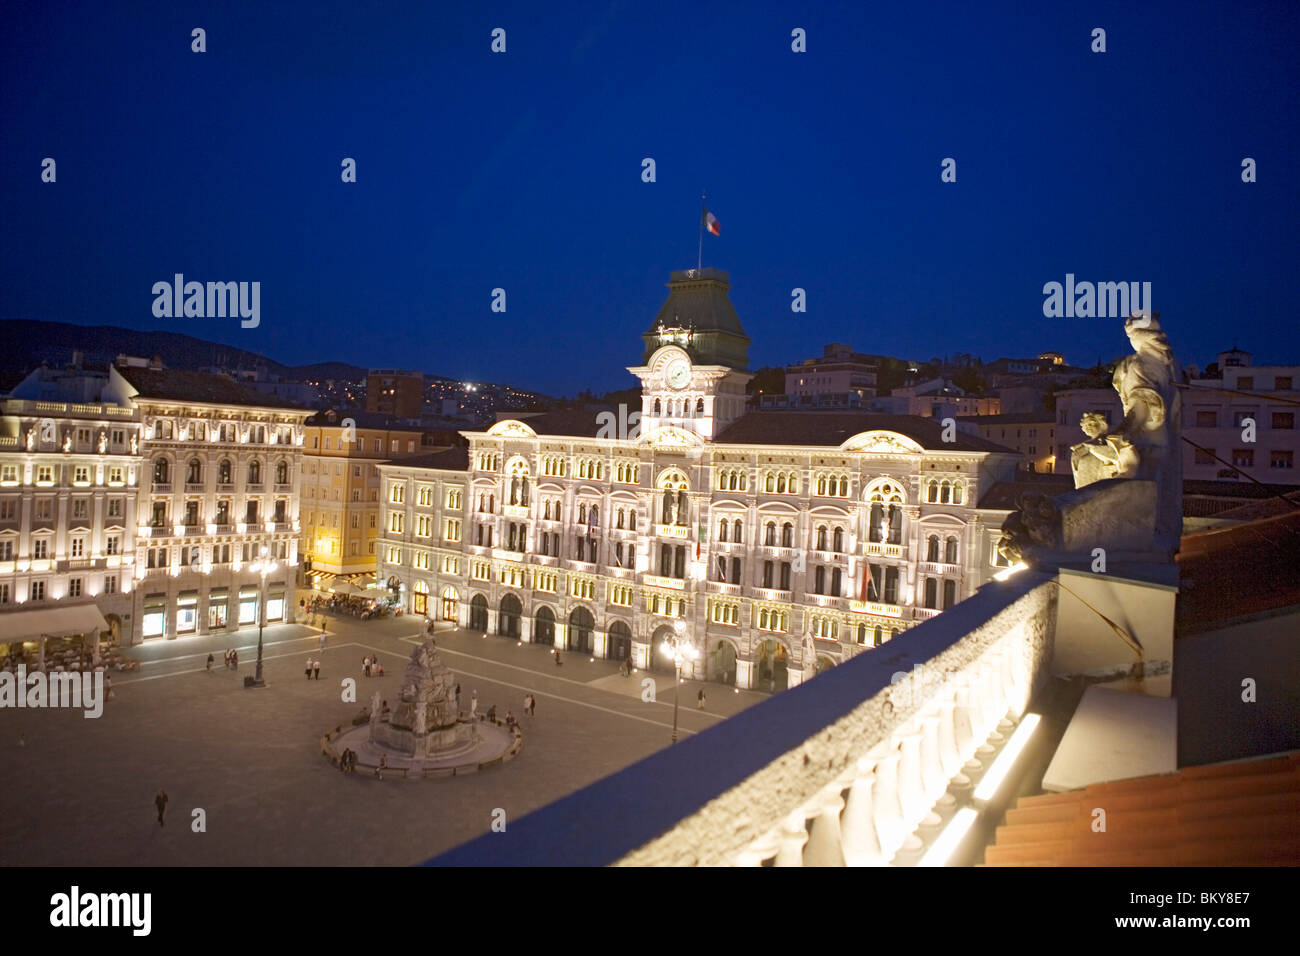 Piazza dell'Unita d'Italia and the city hall, Trieste, Friuli-Venezia Giulia, Upper Italy, Italy Stock Photo